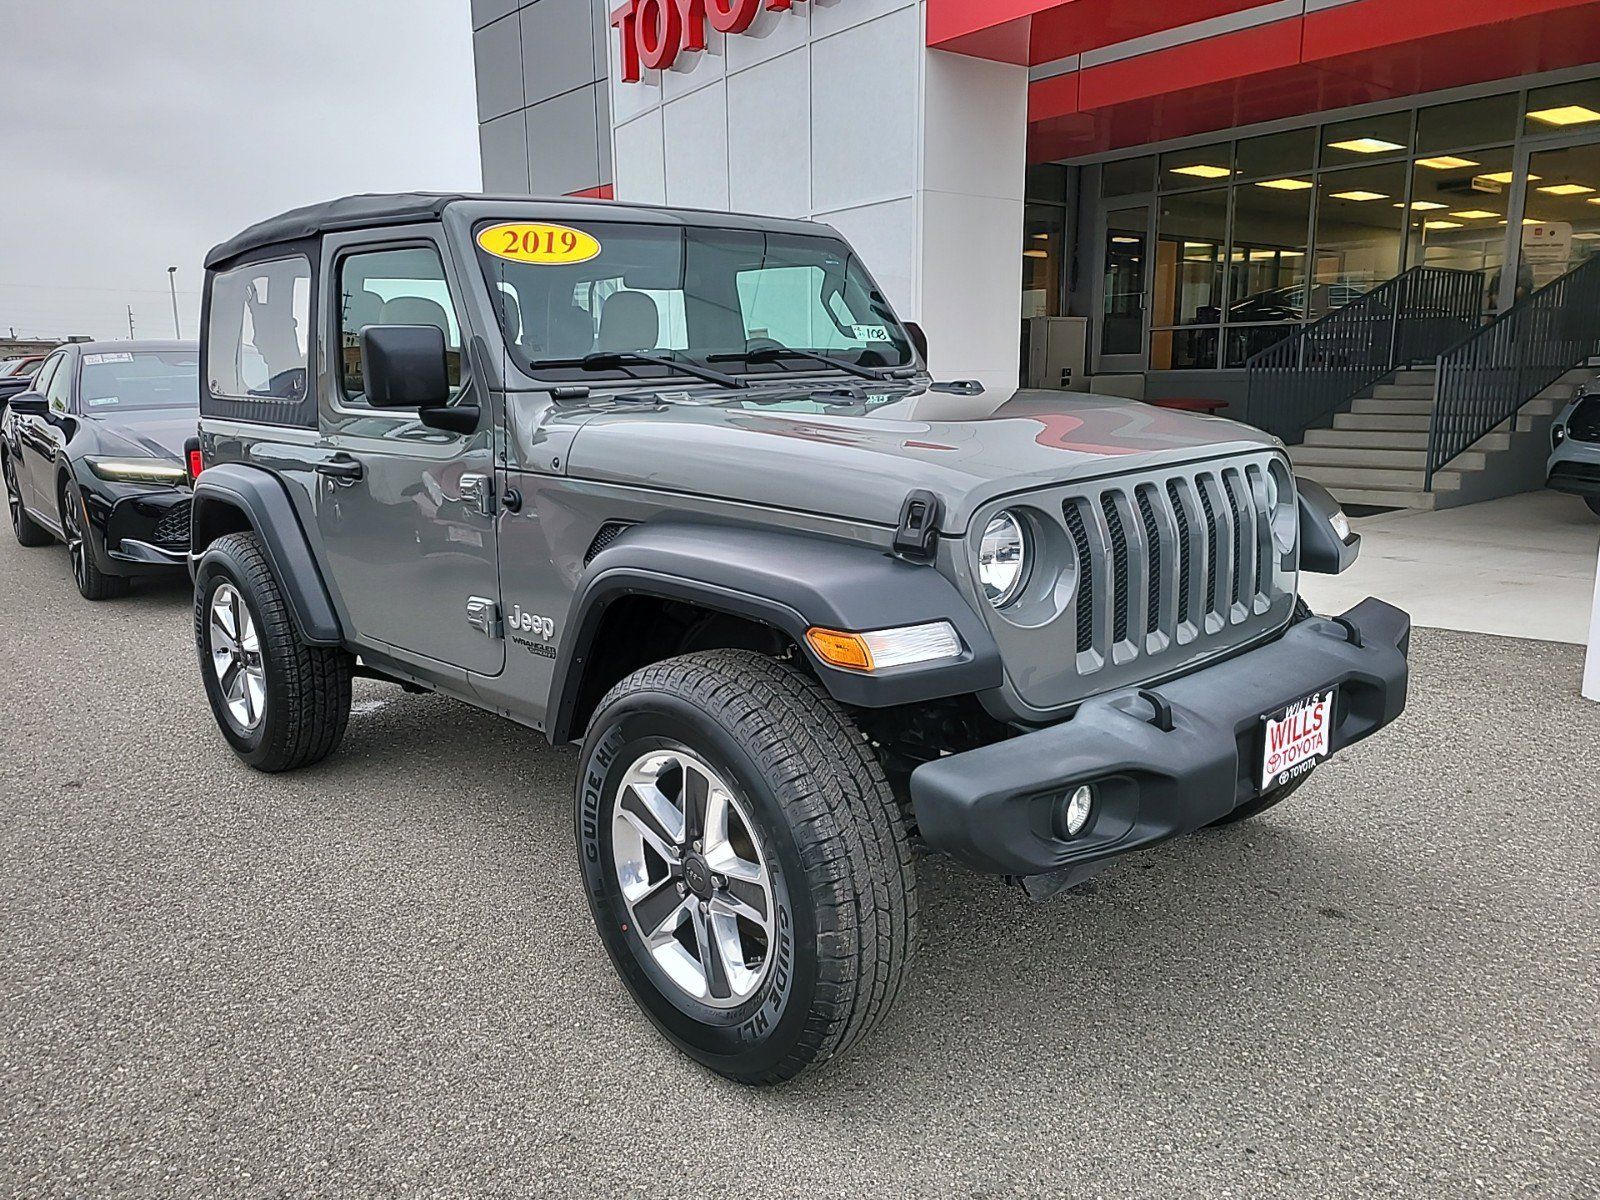 2019 - Jeep - Wrangler - $26,797